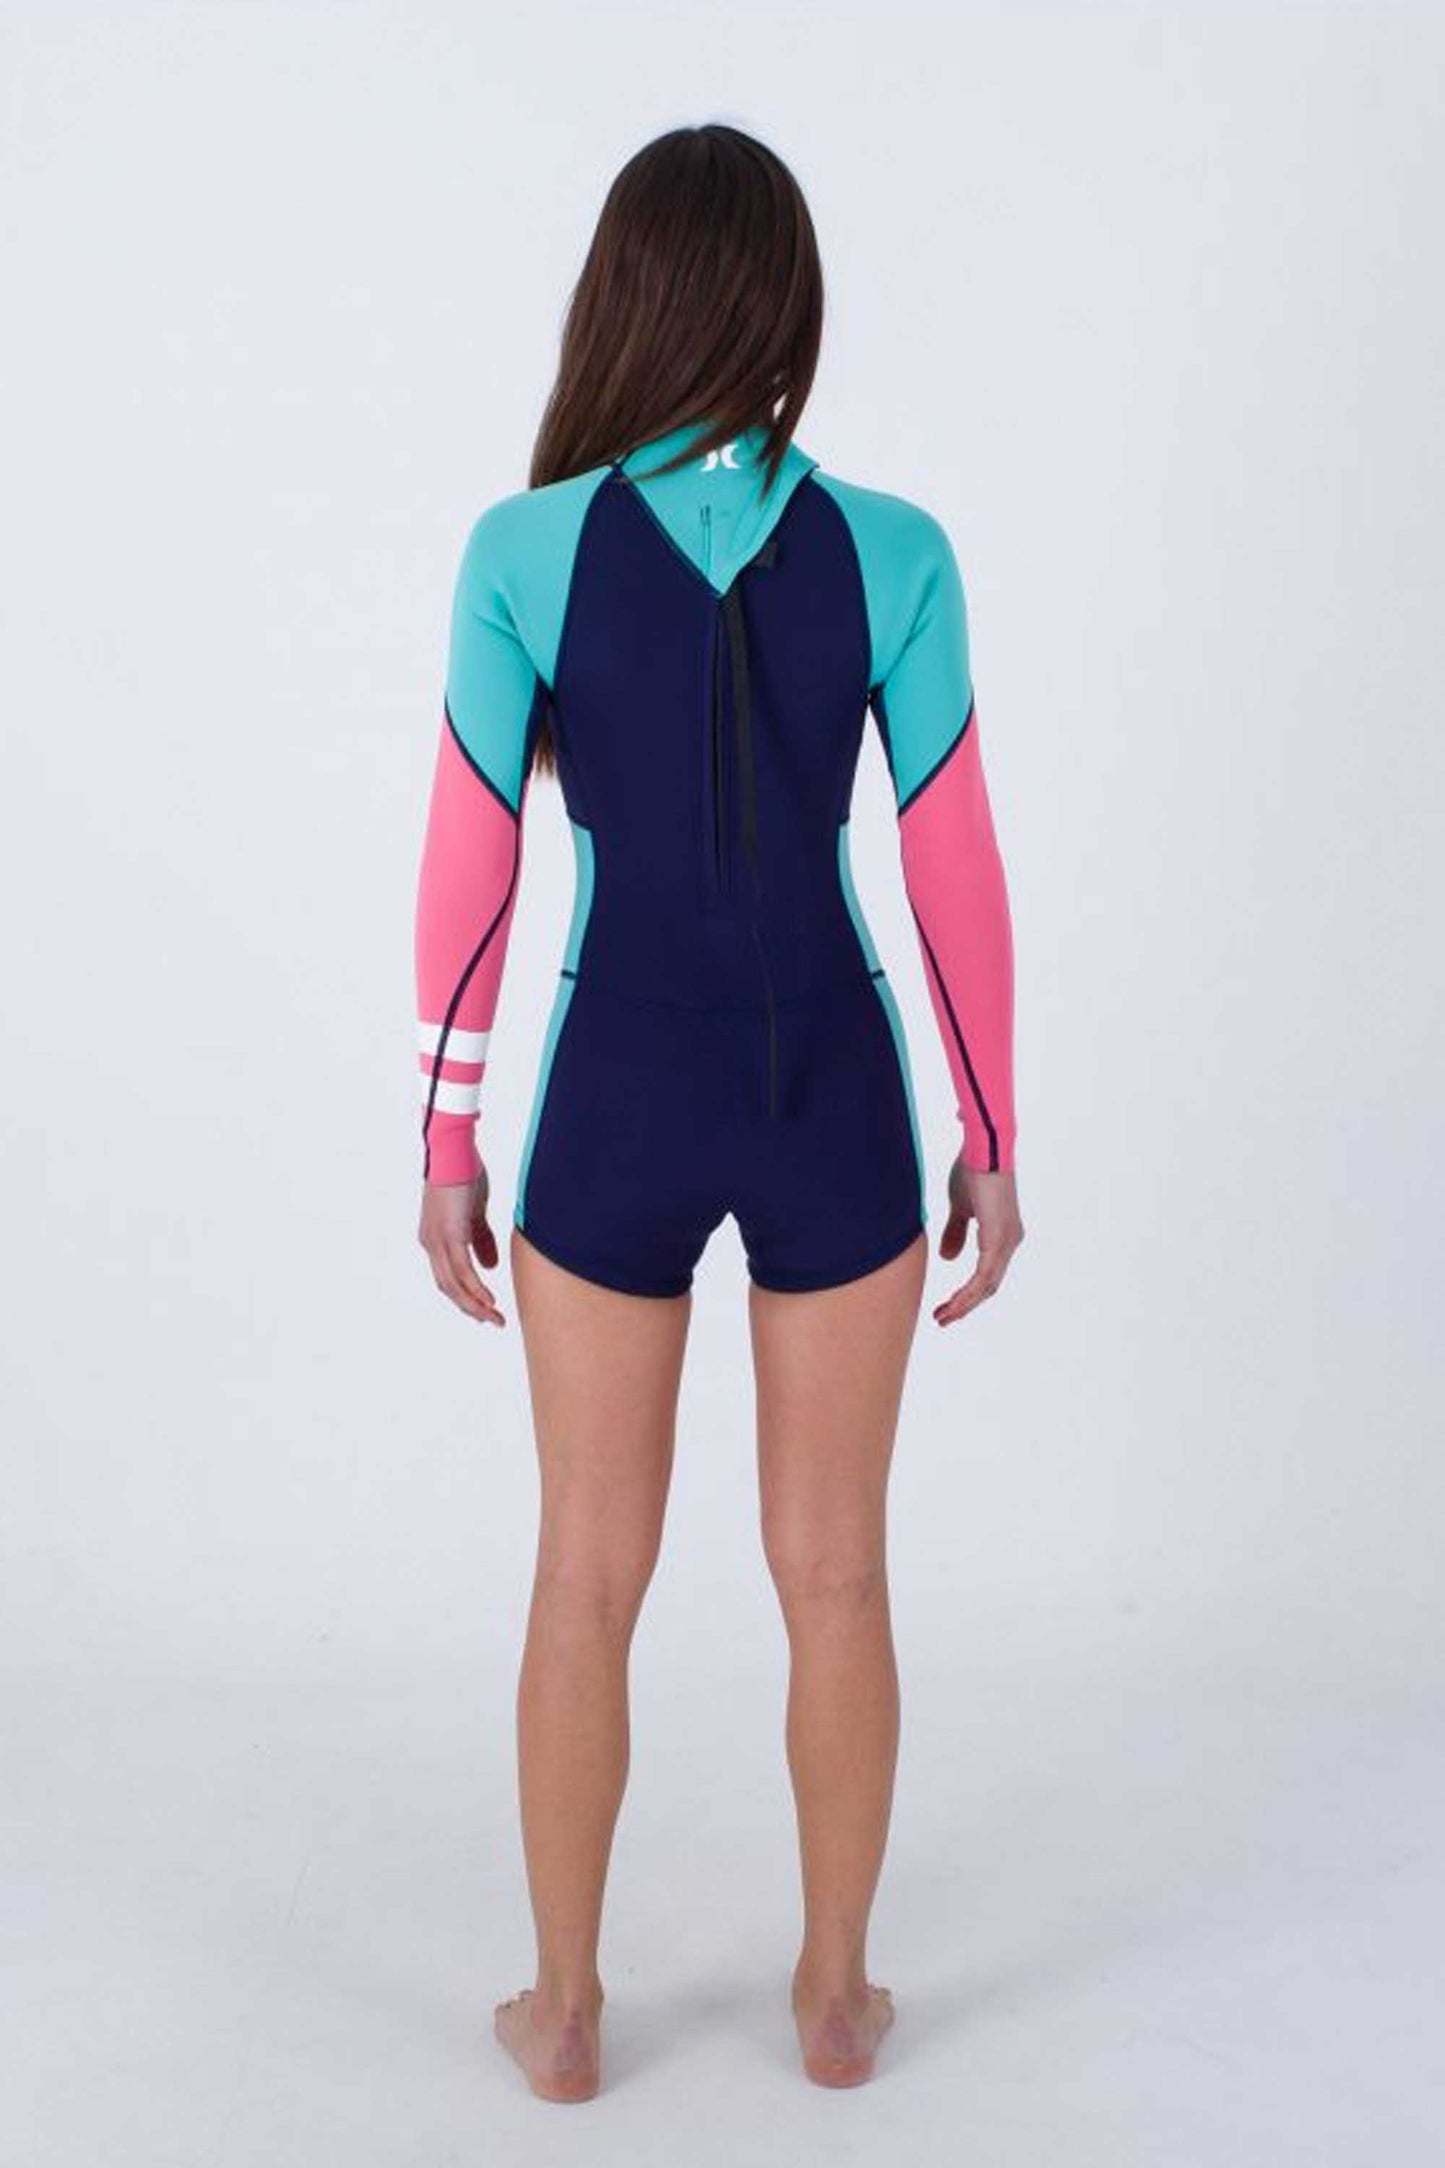 
                  
                    Pukas-Surf-Shop-Hurley-wetsuit-woman-2-springsuit-women-advant-flag-blue
                  
                